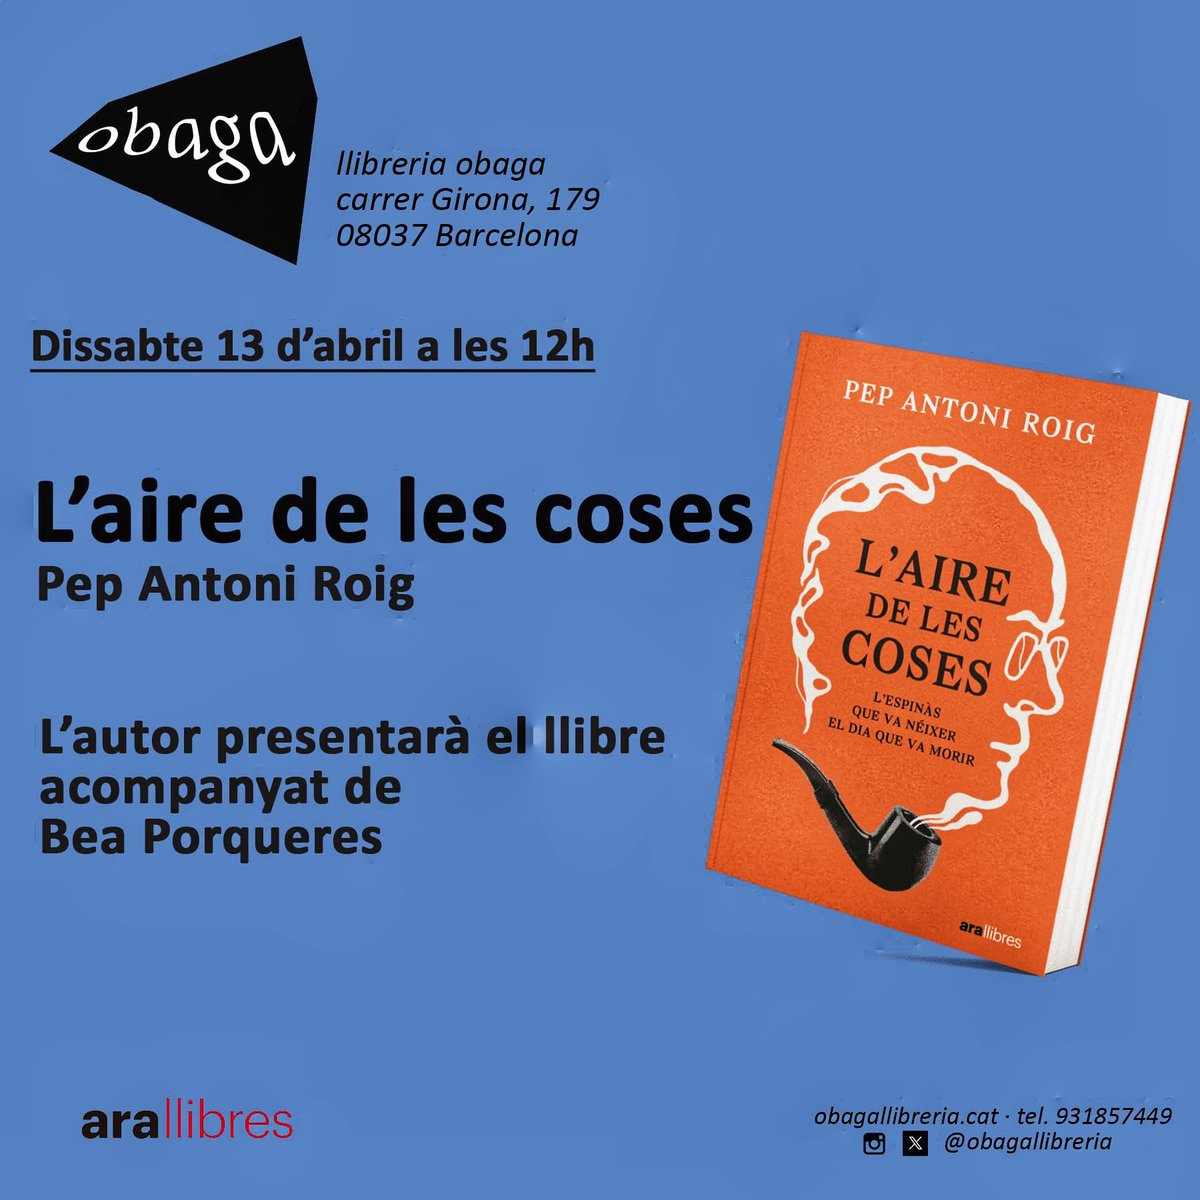 Si demà dissabte us ve de gust fer el vermut amb un toc de literatura, presentarem 'L'aire de les coses' a la @ObagaLlibreria de Barcelona. A les 12.00h, amb la Bea Porqueres.